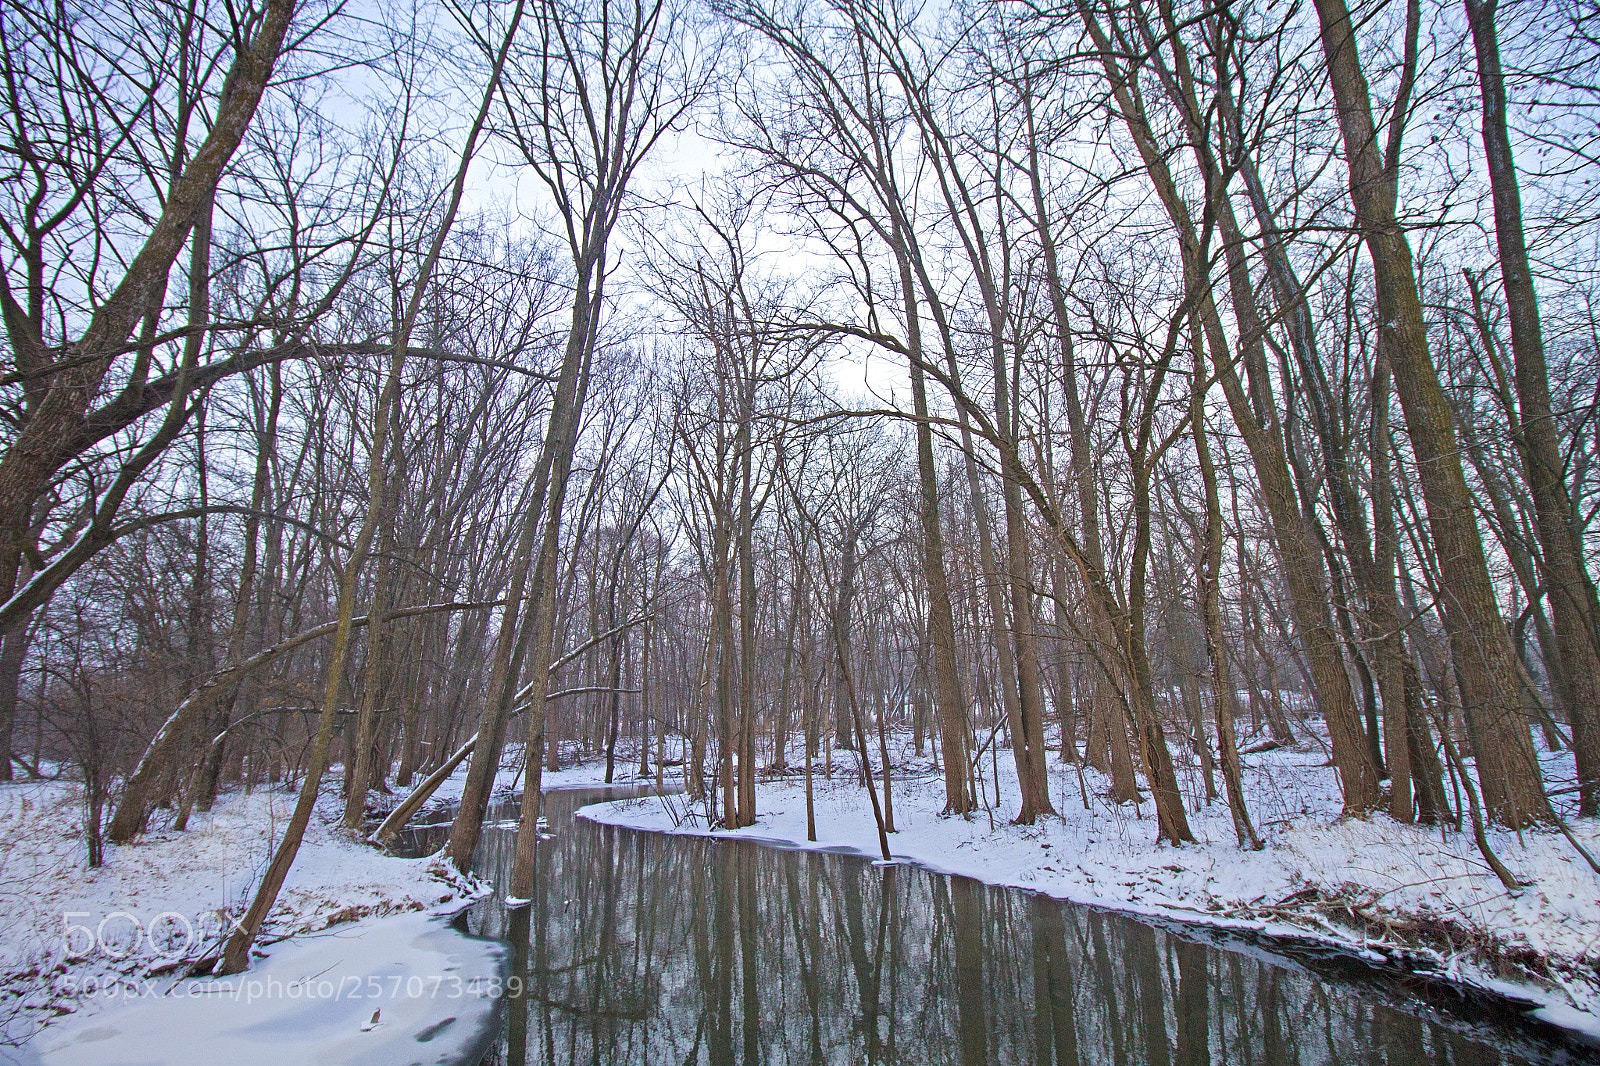 Canon EOS 7D sample photo. Winter photography